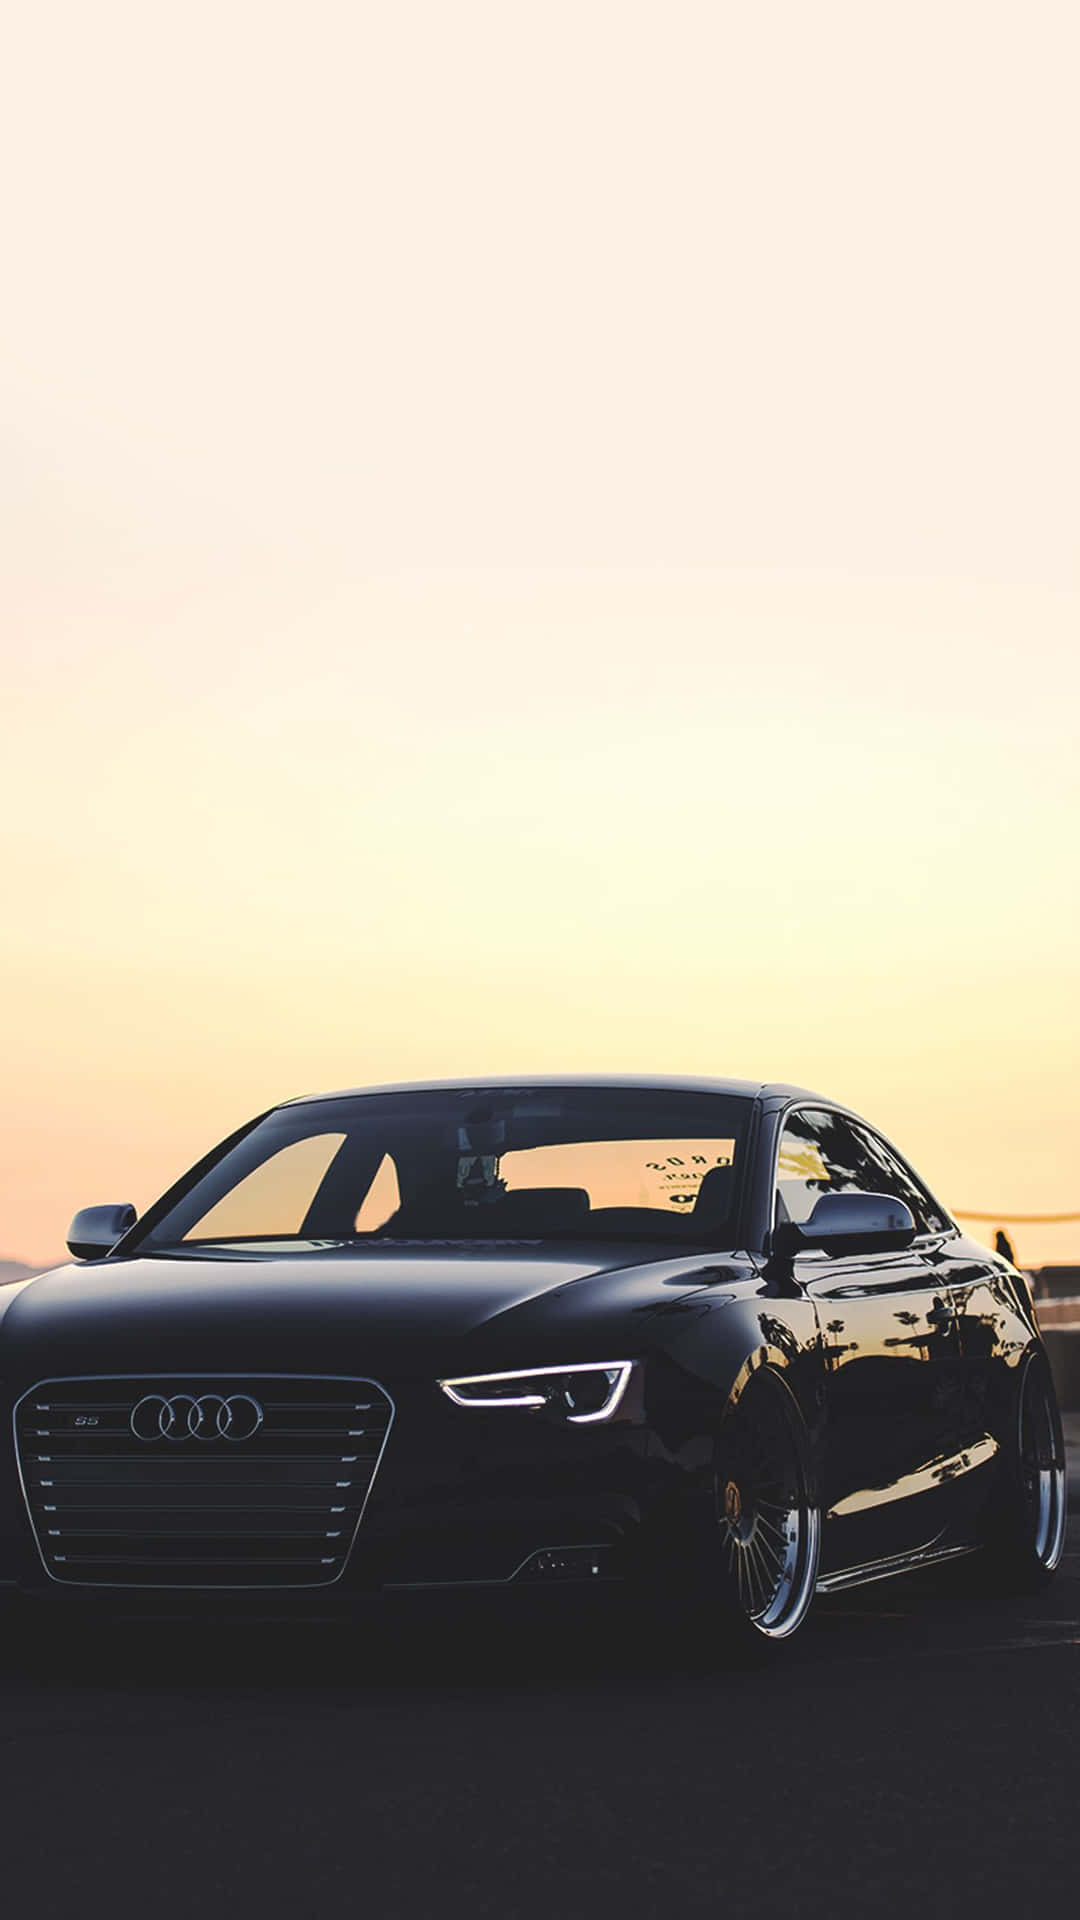 Audi A3 1080p Wallpaper - Wallpaperforu